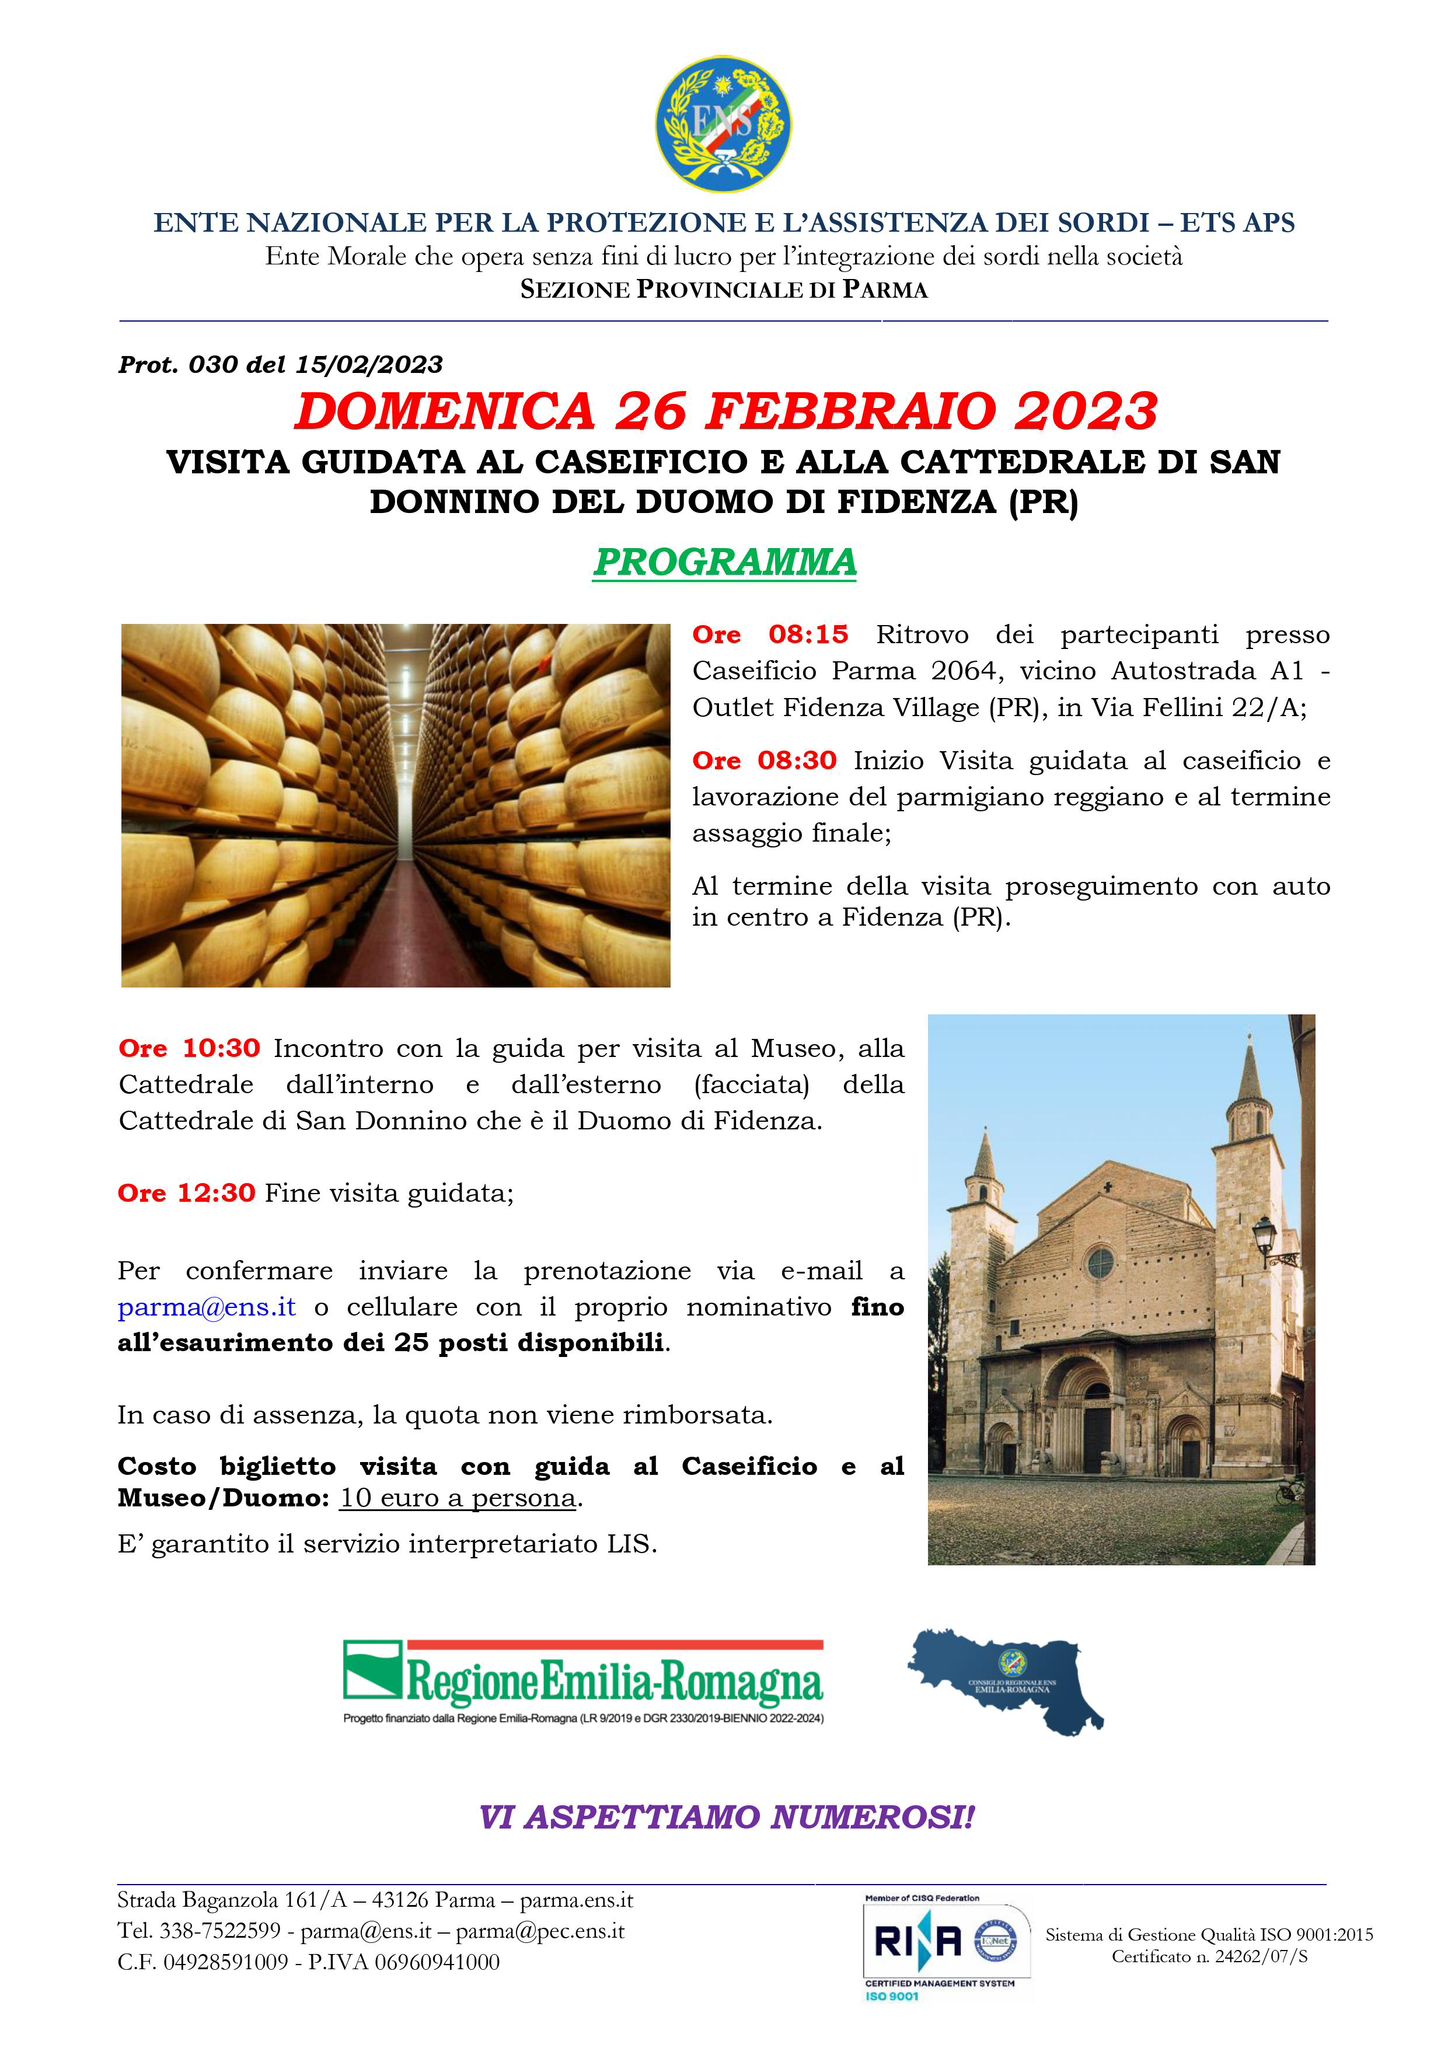 Visita al caseificio e Duomo di Fidenza PR Domenica 26 Febbraio 2023